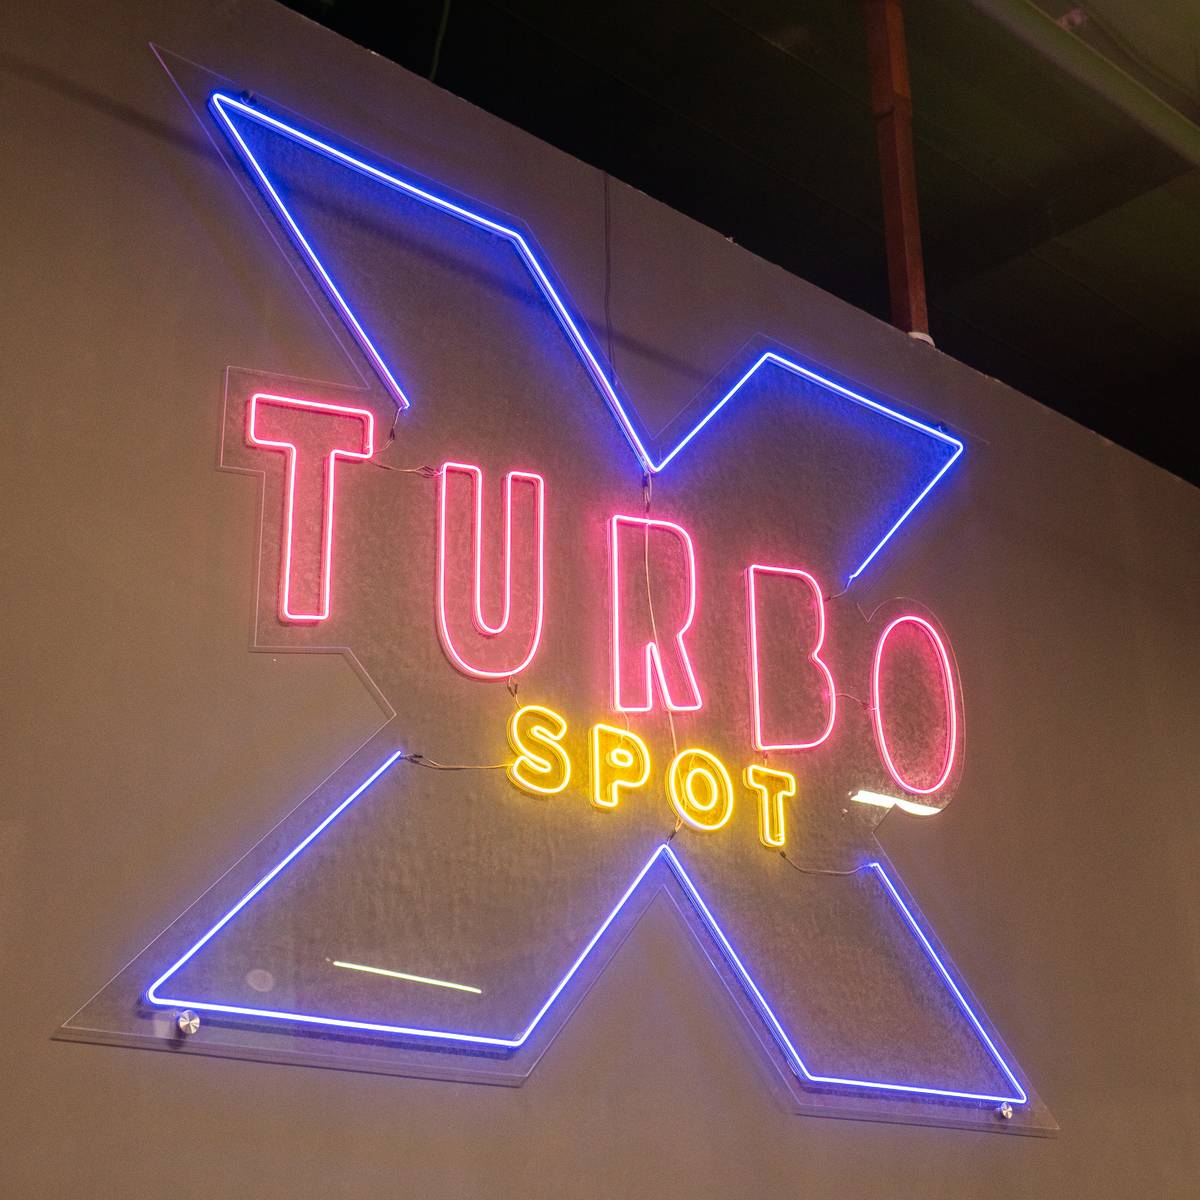 Turbo X Spot